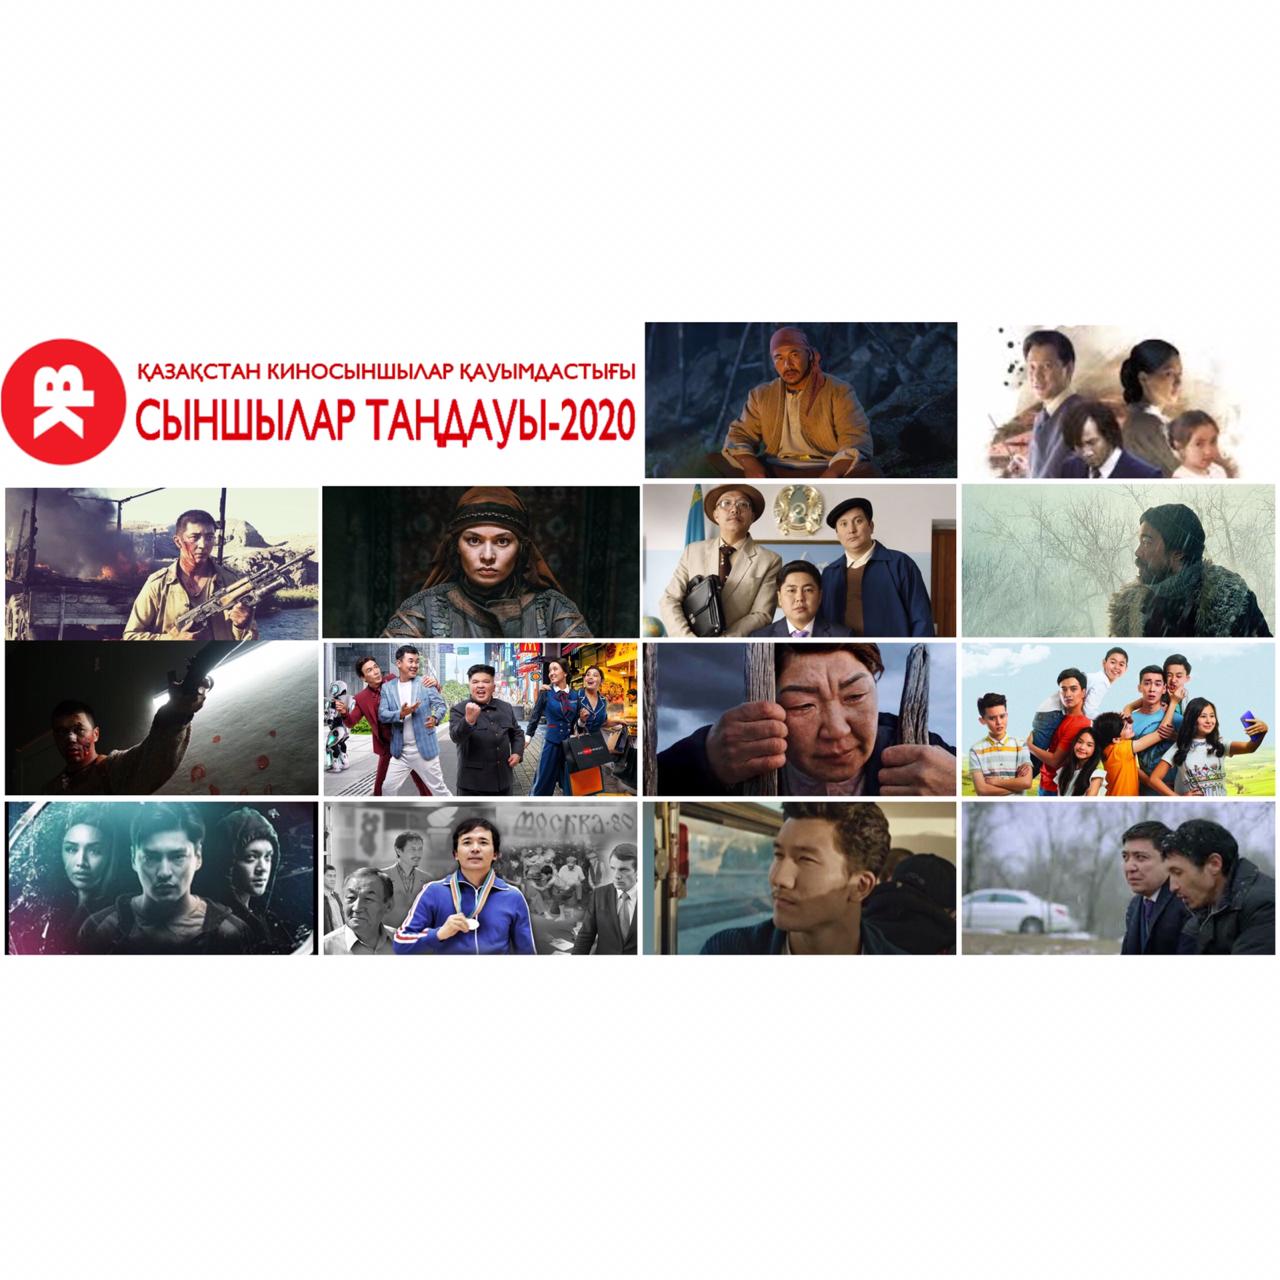 «Сыншылар таңдауы-2020» киножүлдесіне үміткерлер тізімі жарияланды